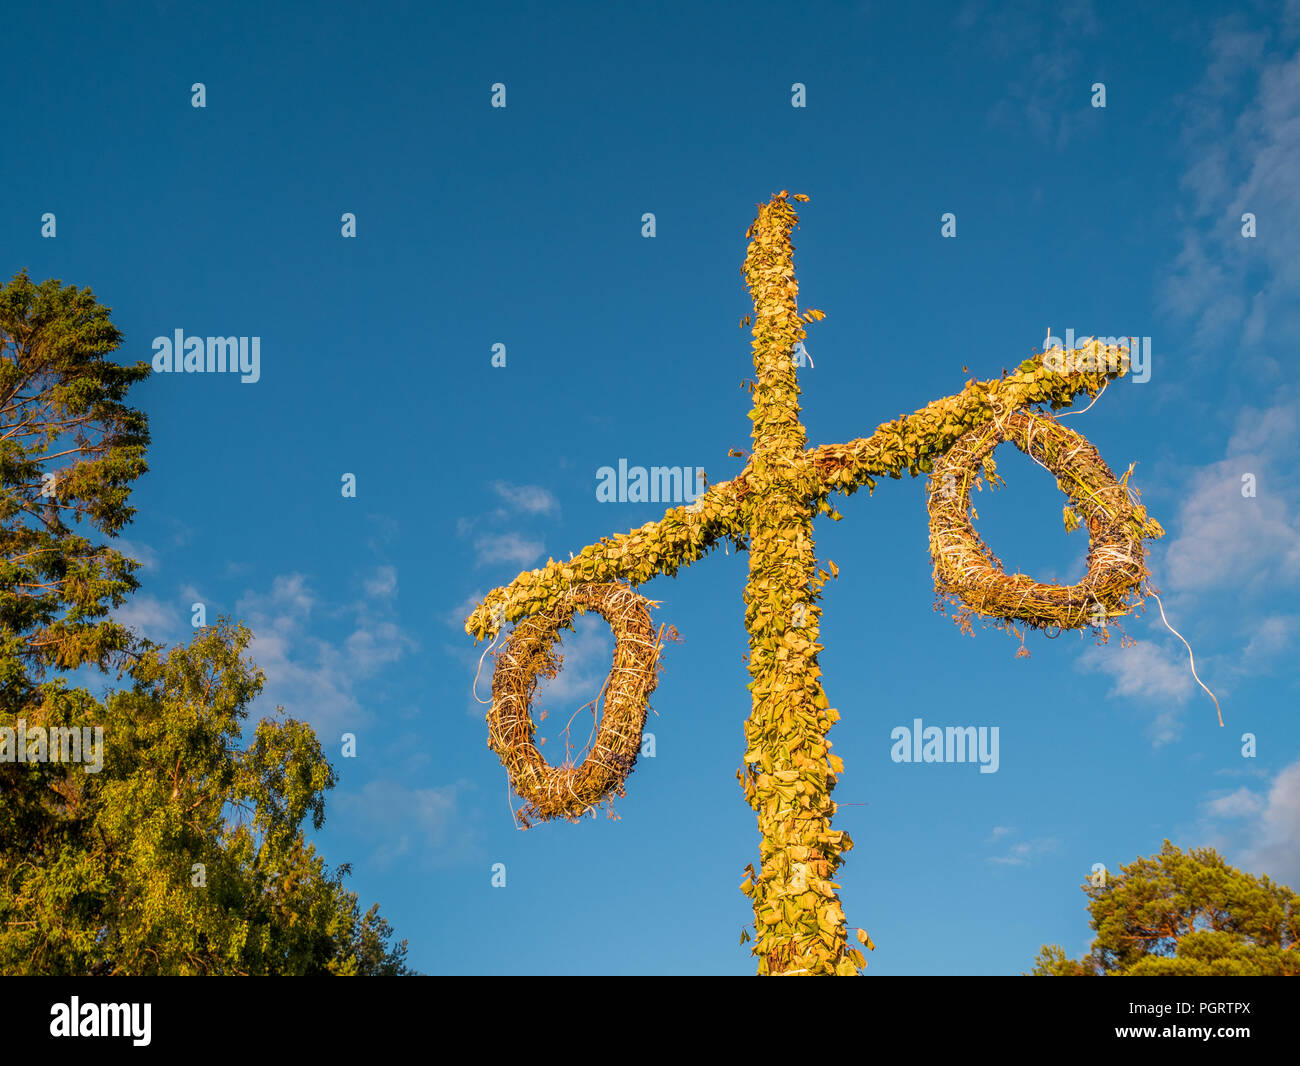 Schwedische Maibaum auf Hochsommer oder Midsommar in Sun verwendet wird. Blauen Himmel im Hintergrund. Stockfoto